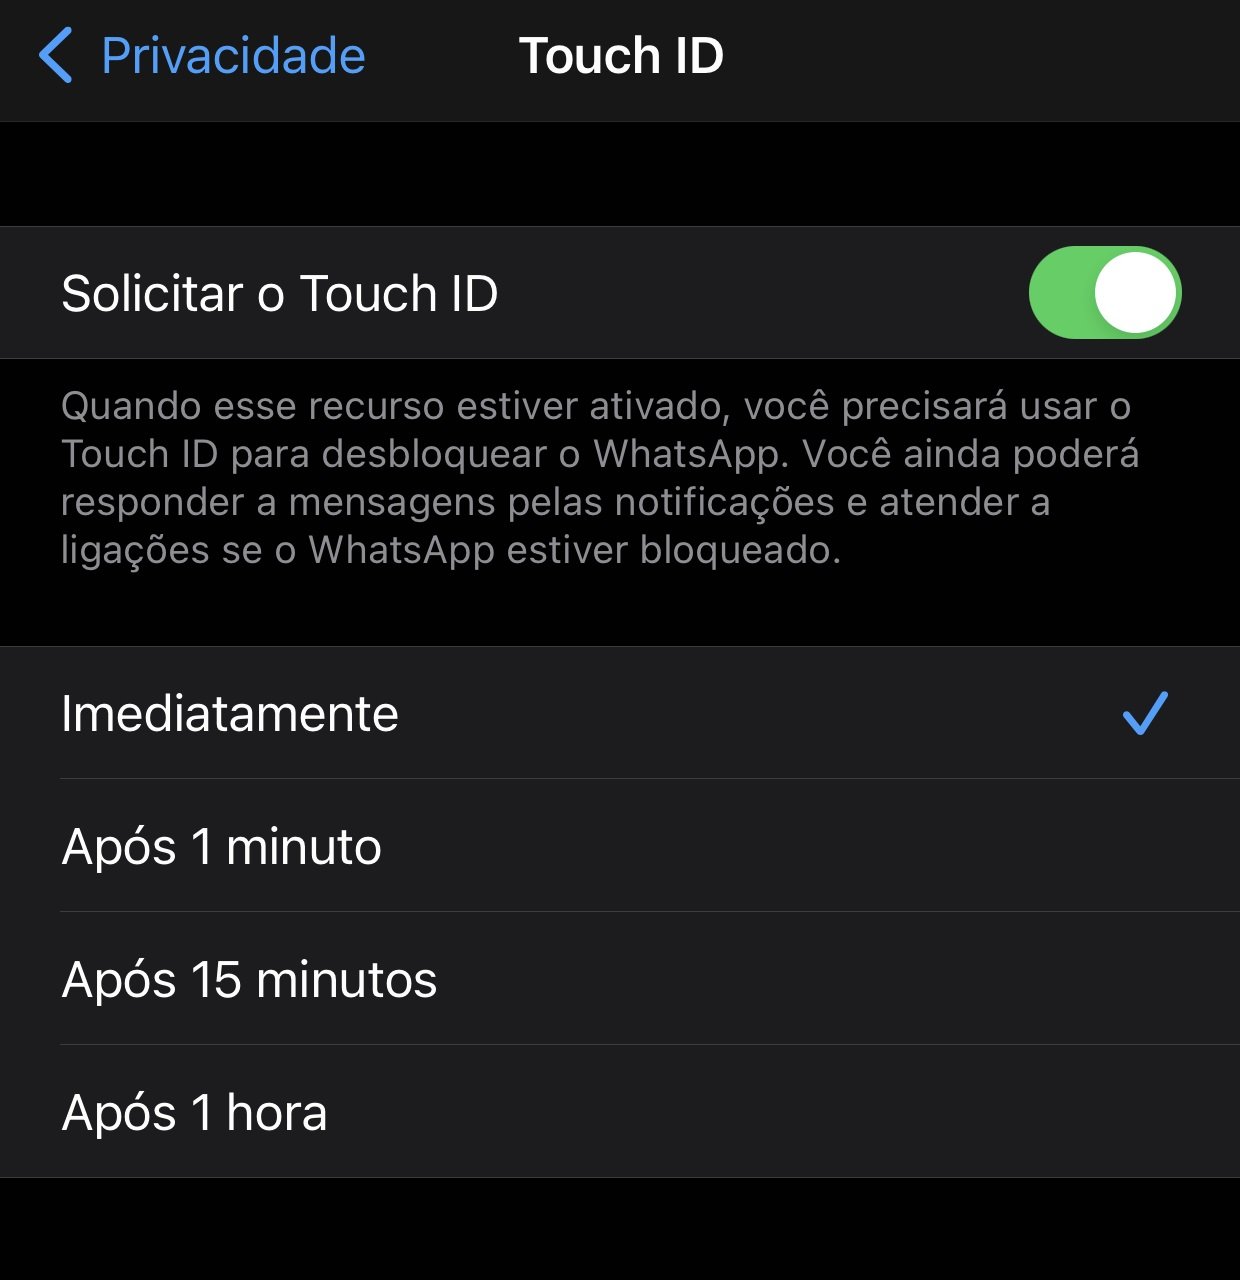 Você pode escolher o período em que a identificação pelo Touch ID seja exigida